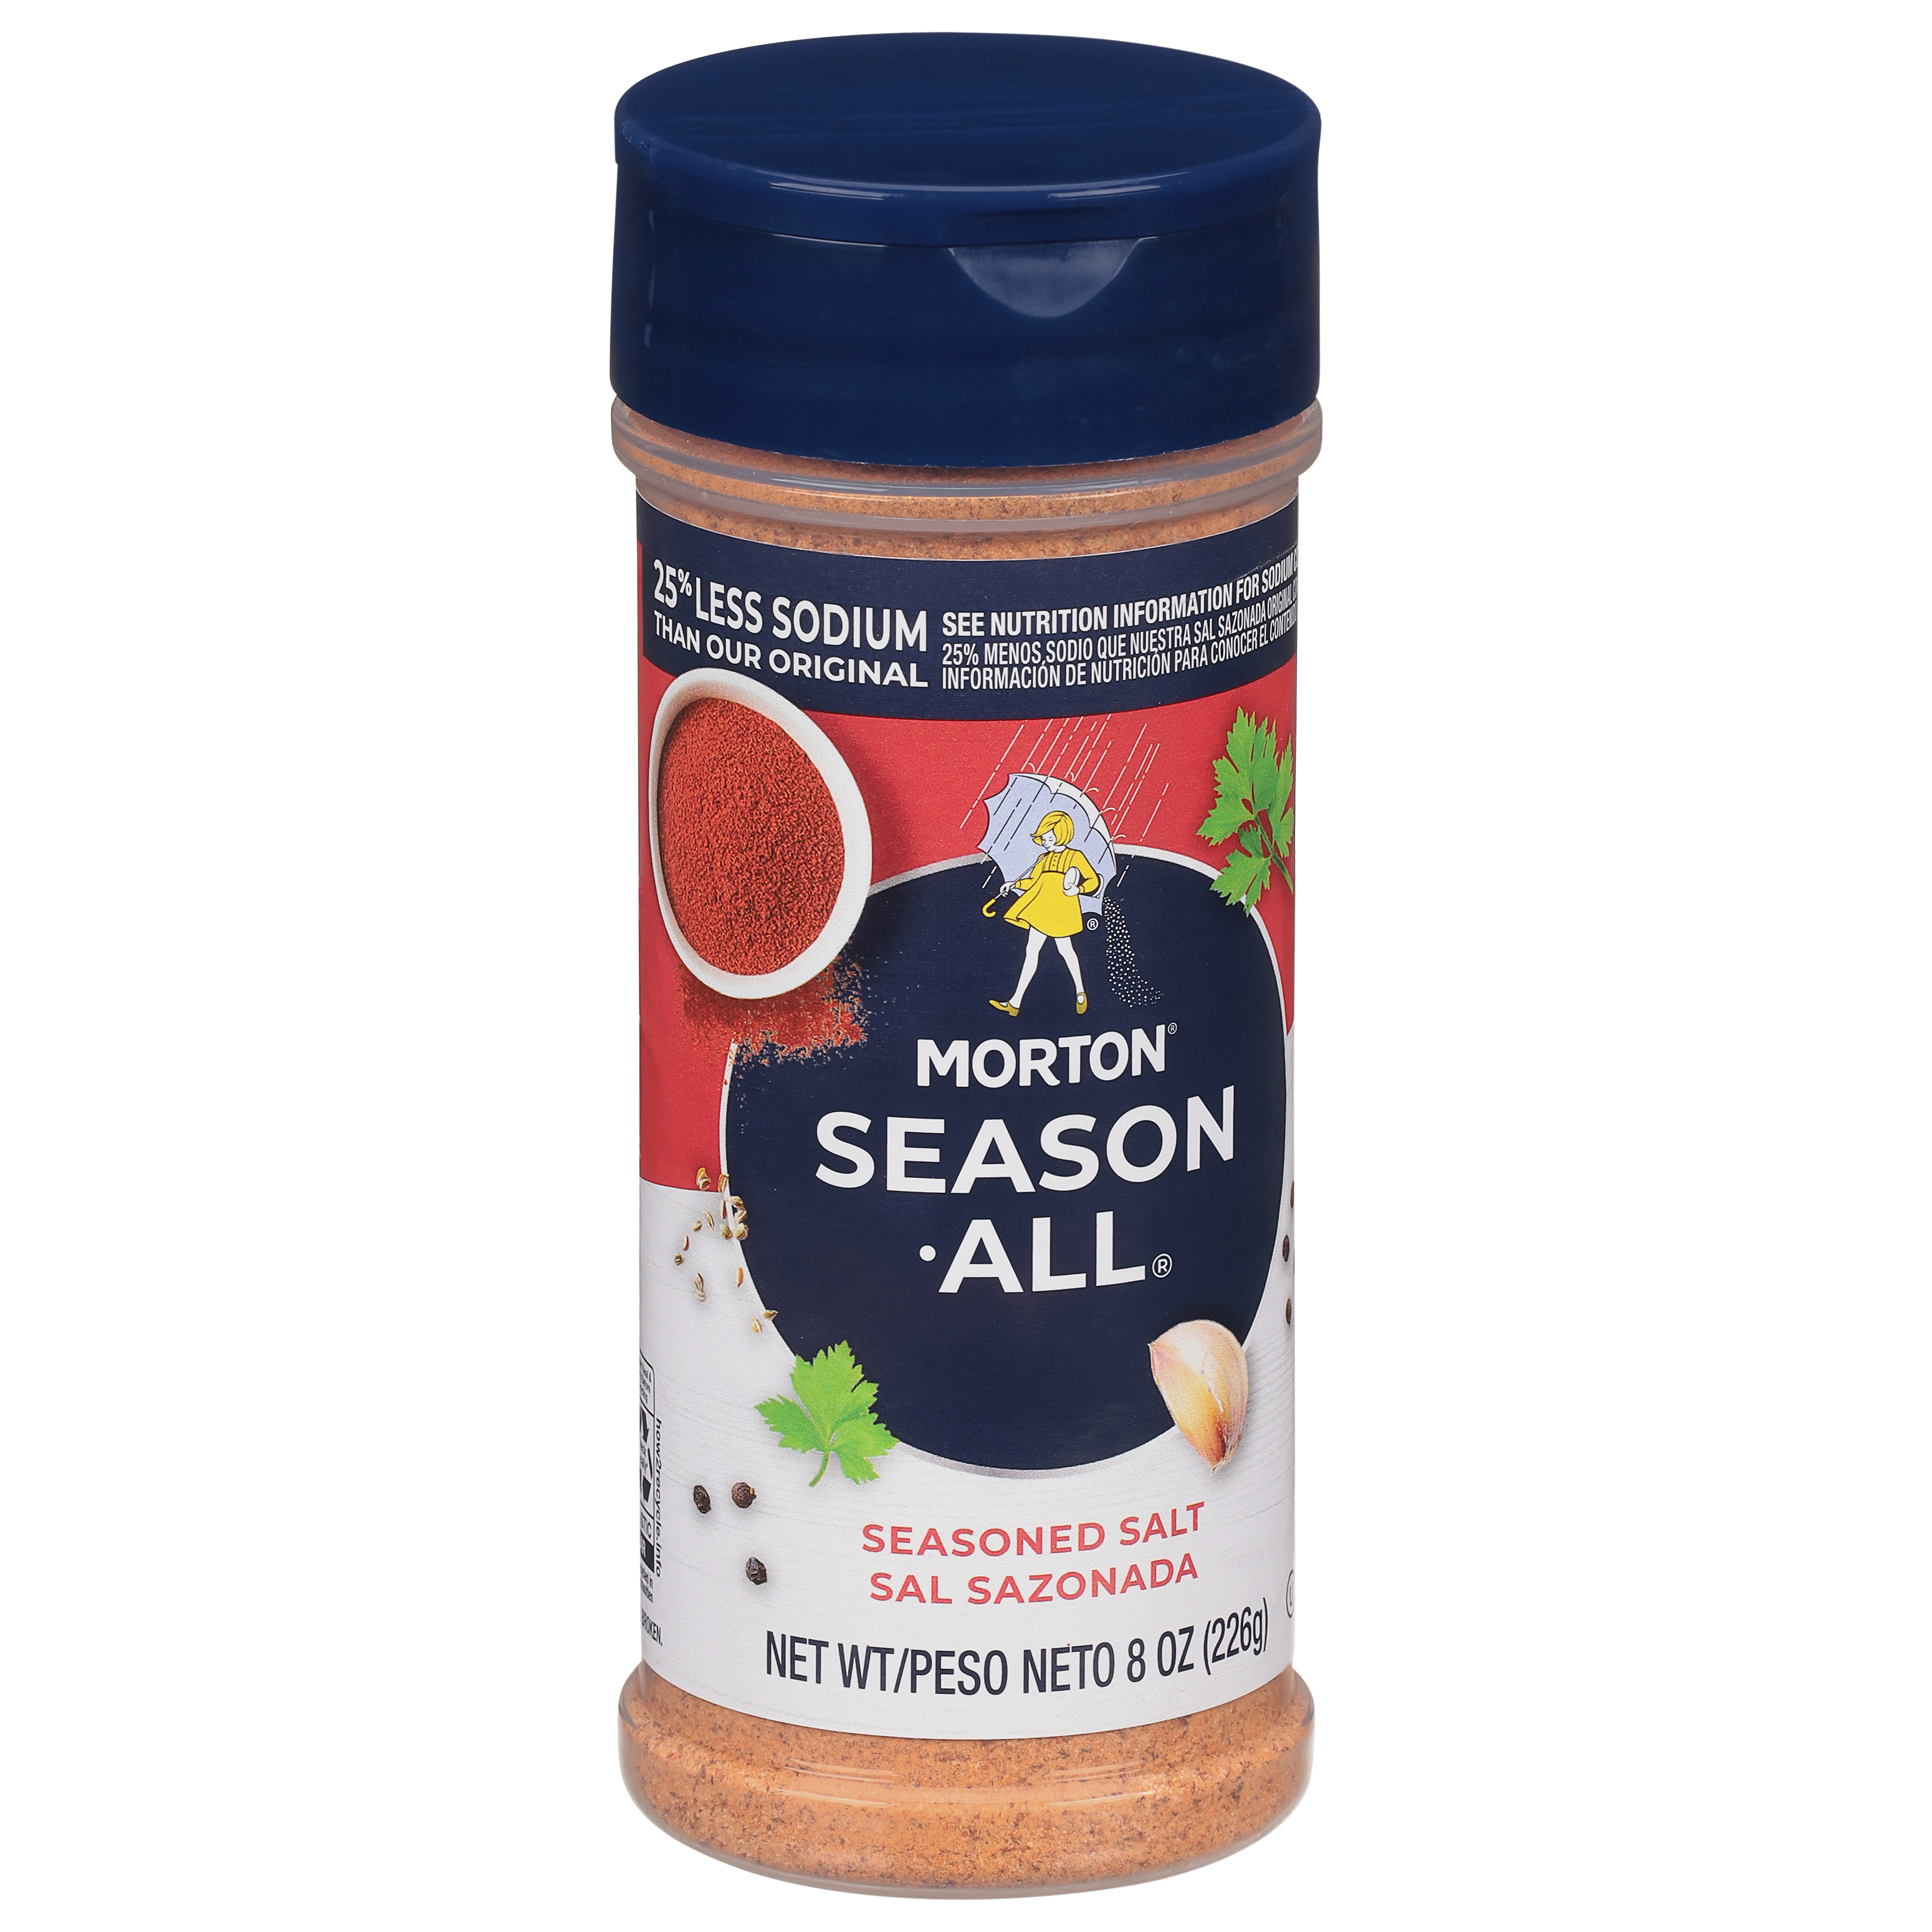 Lawry's Seasoned Salt (40 oz.) (Pack of 6)